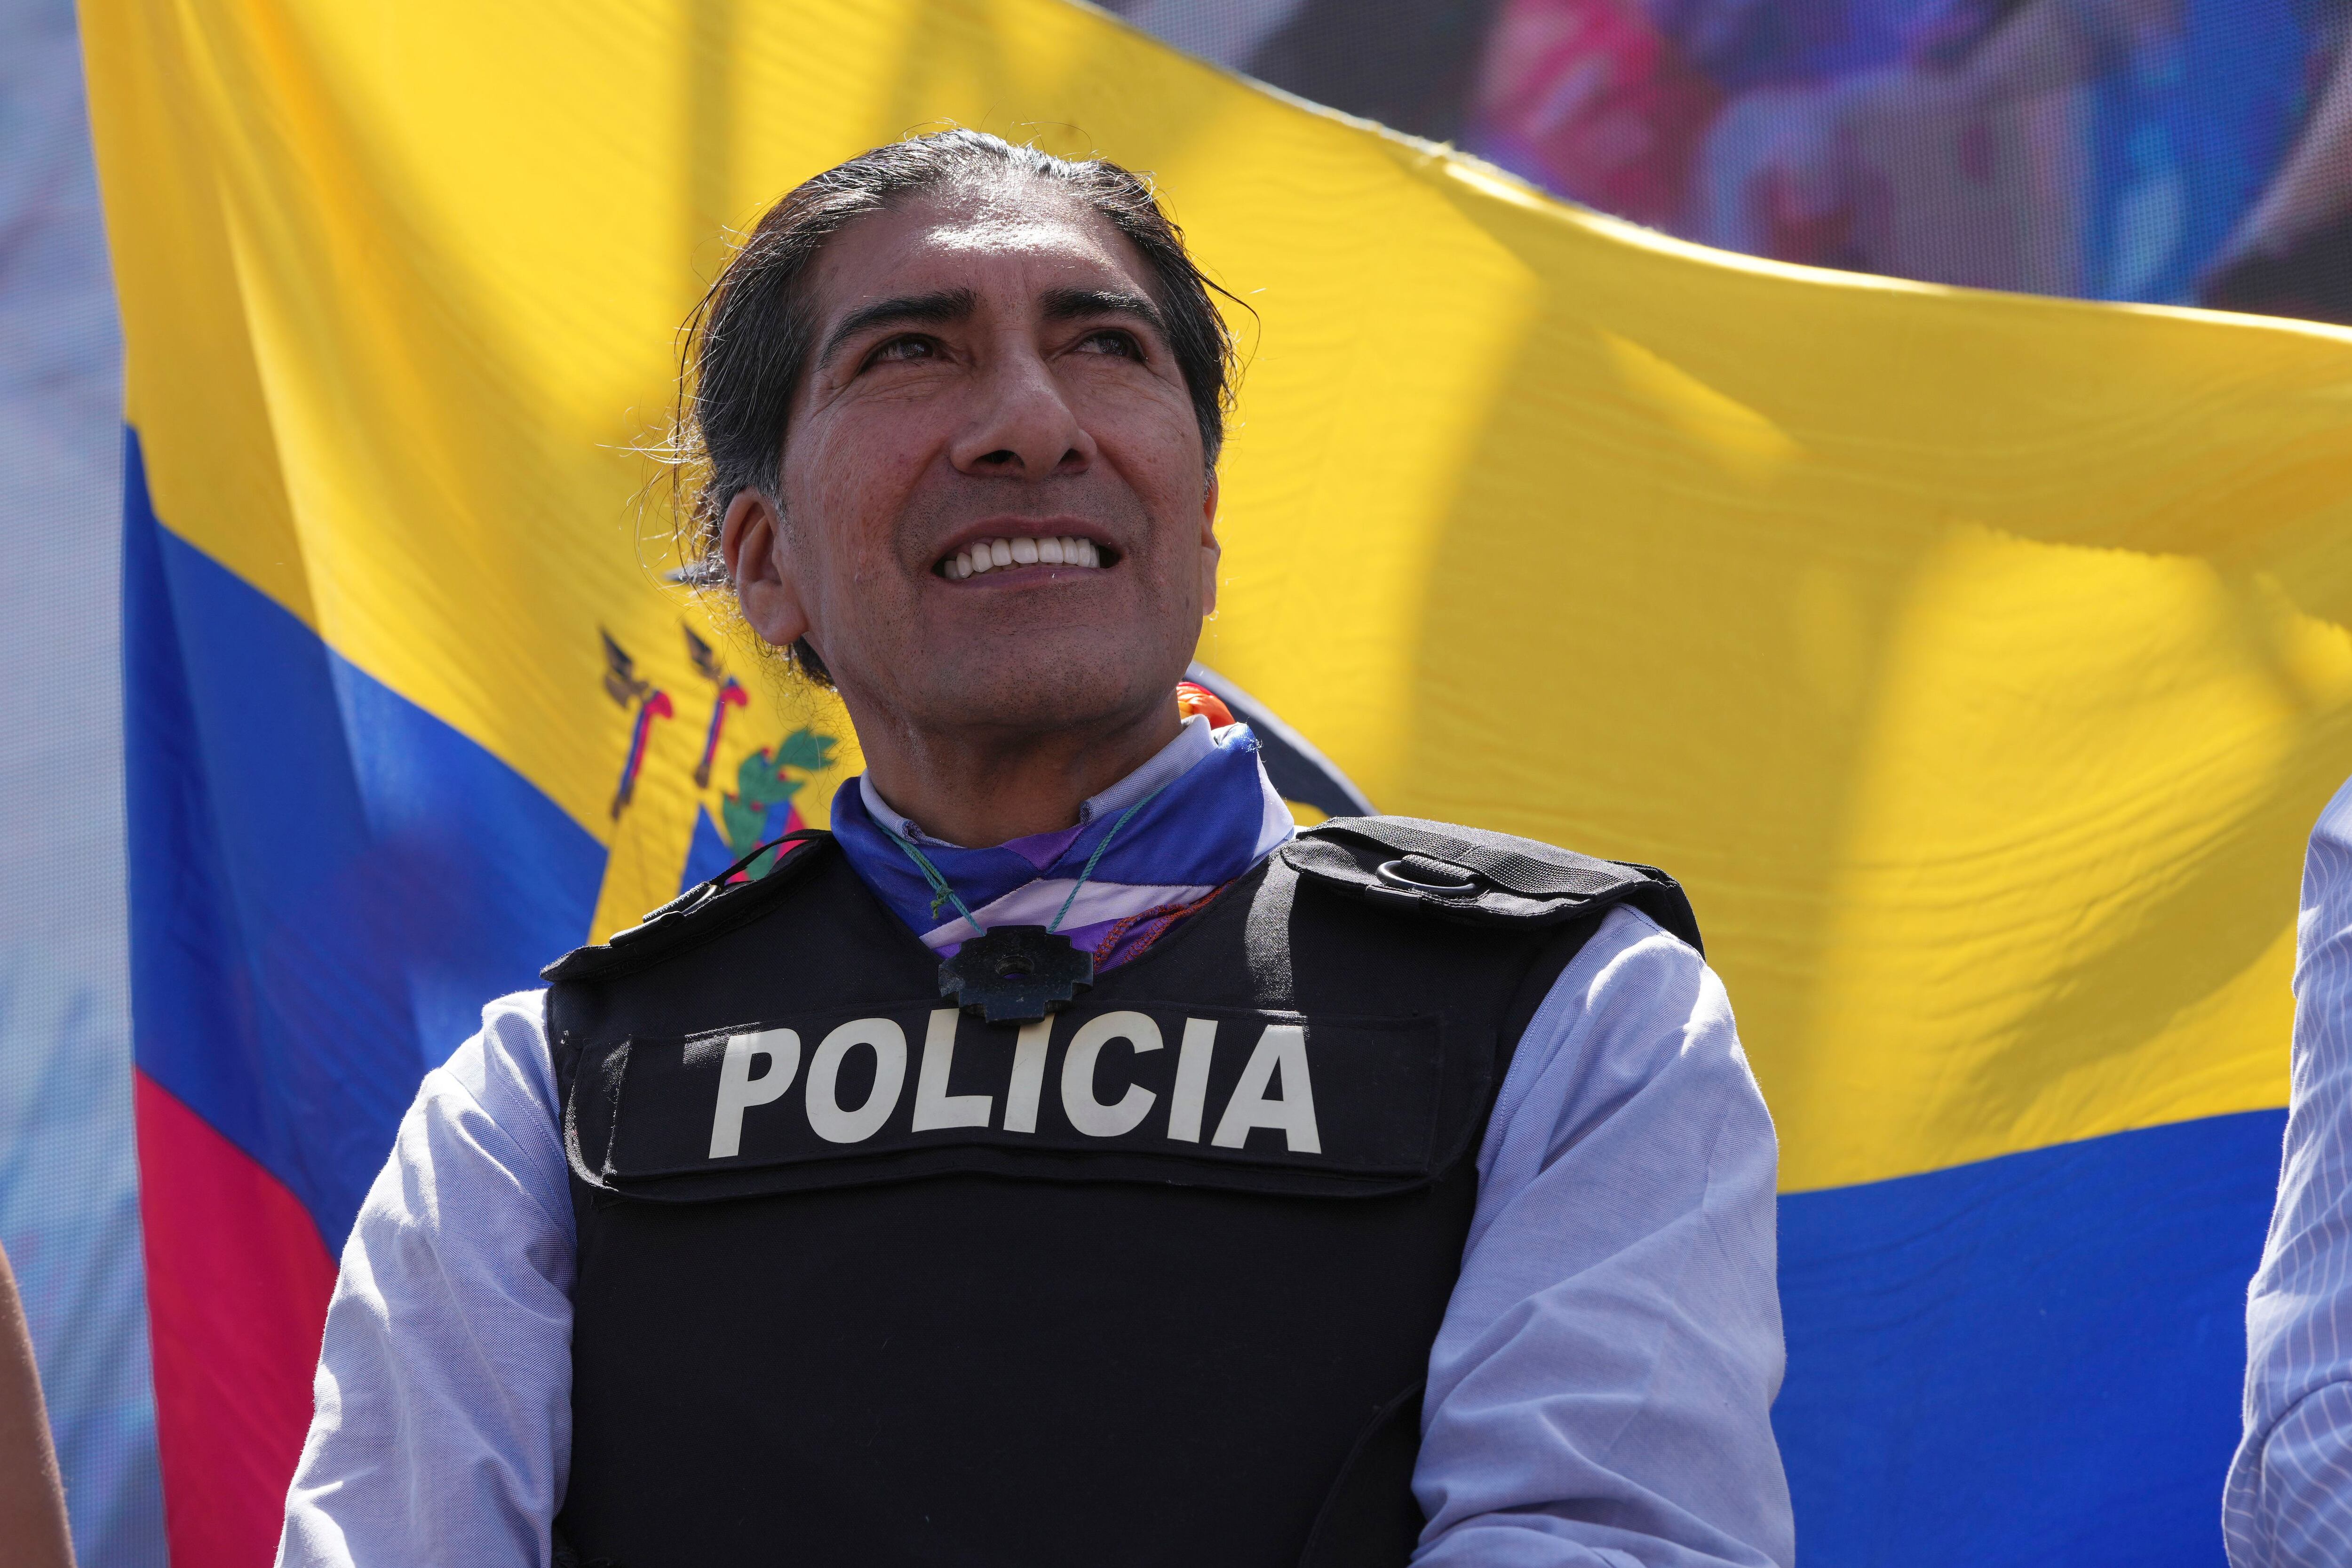 Como todos los aspirantes a la presidencia de Ecuador en este final de campaña, Yaku Pérez también utilizó un chaleco antibalas como medida de seguridad. (AP/Dolores Ochoa)